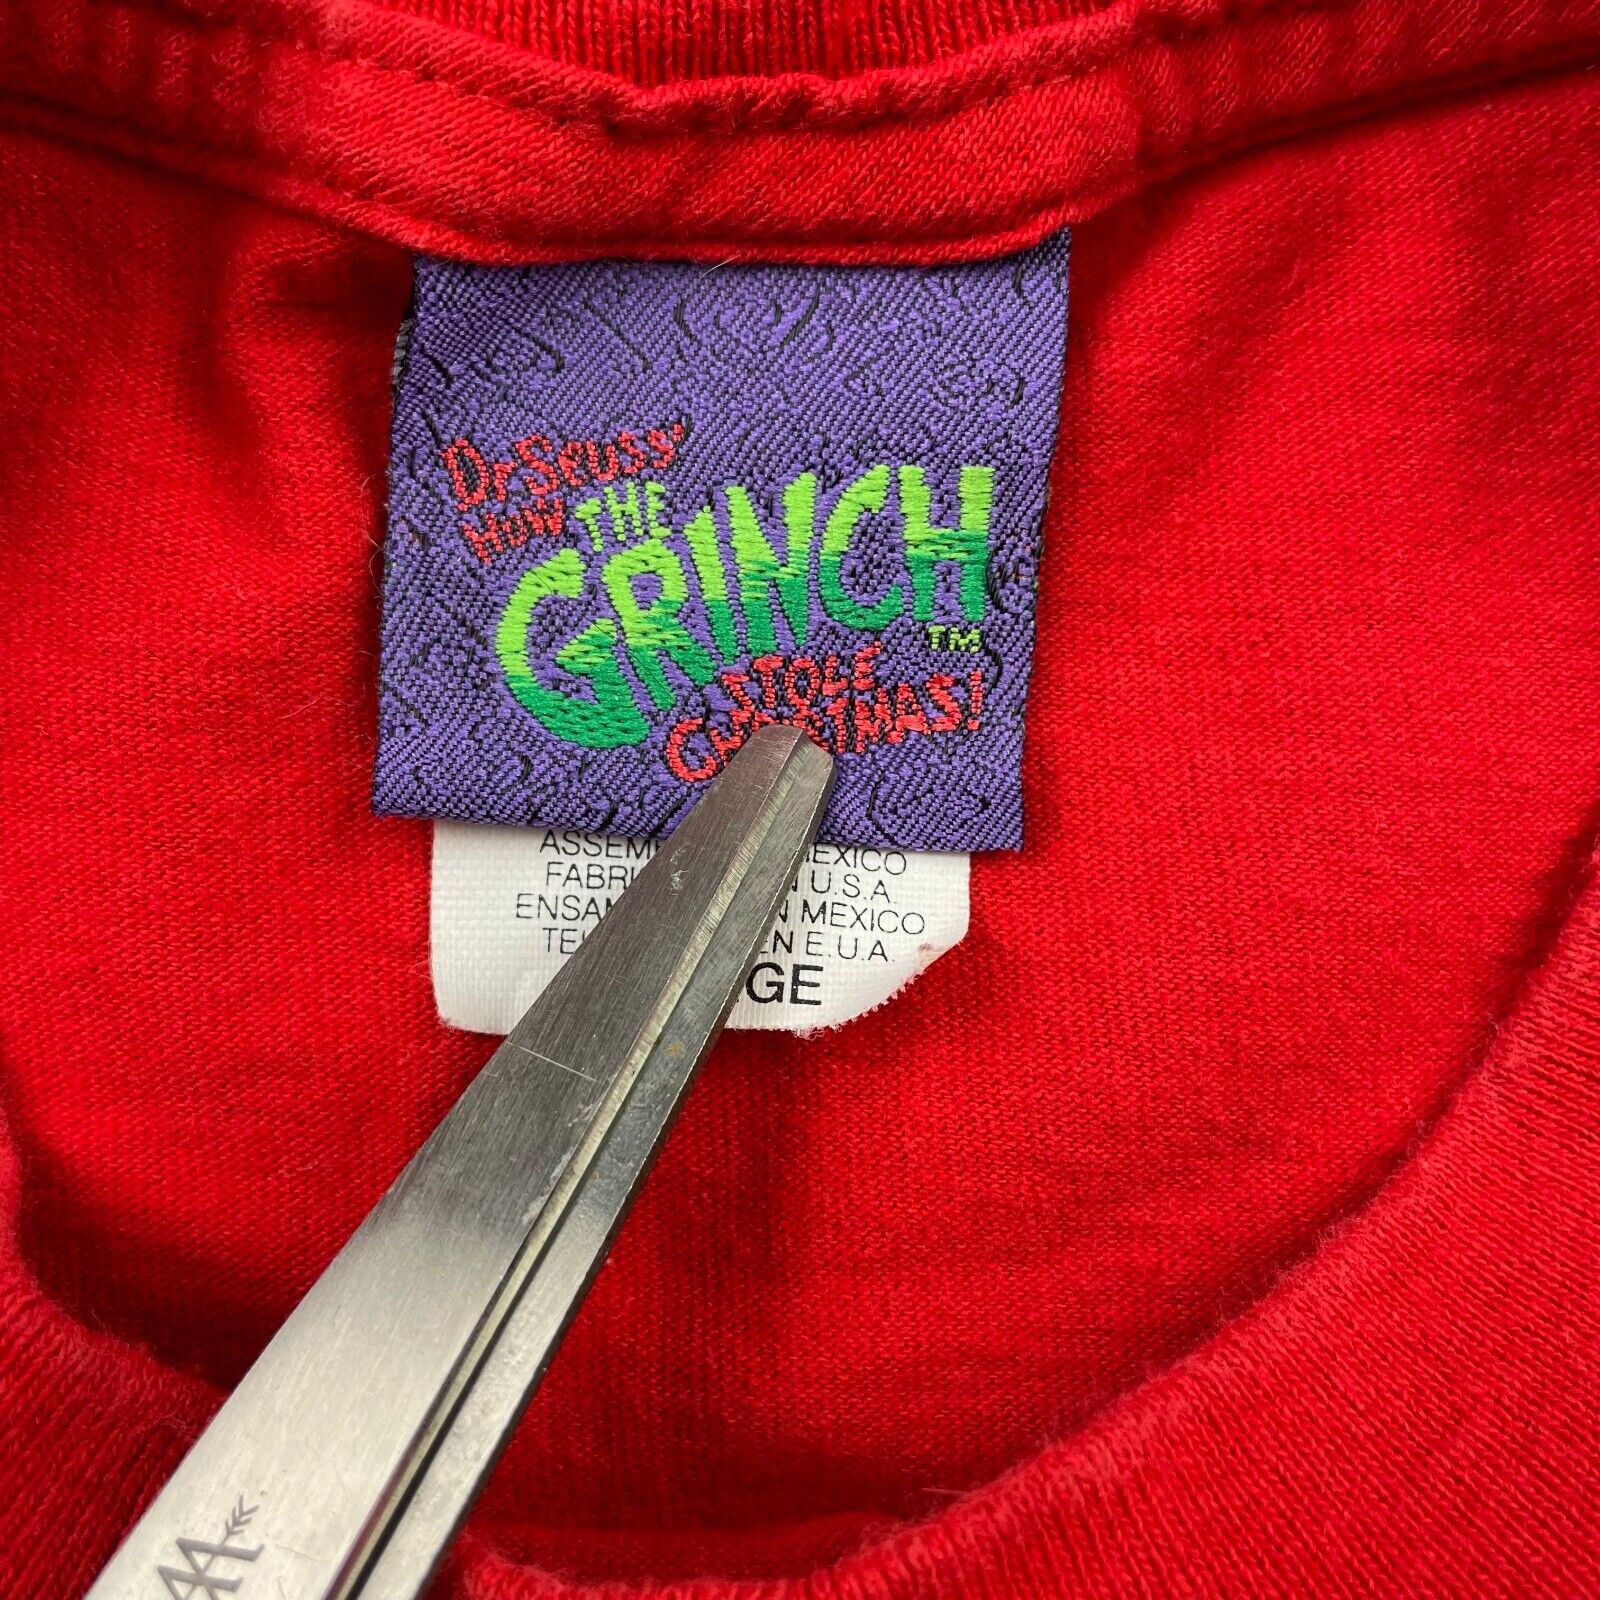 VTG 2000 DaGrinch Men's 100% Cotton Crewneck S/S T-Shirt Red  XL